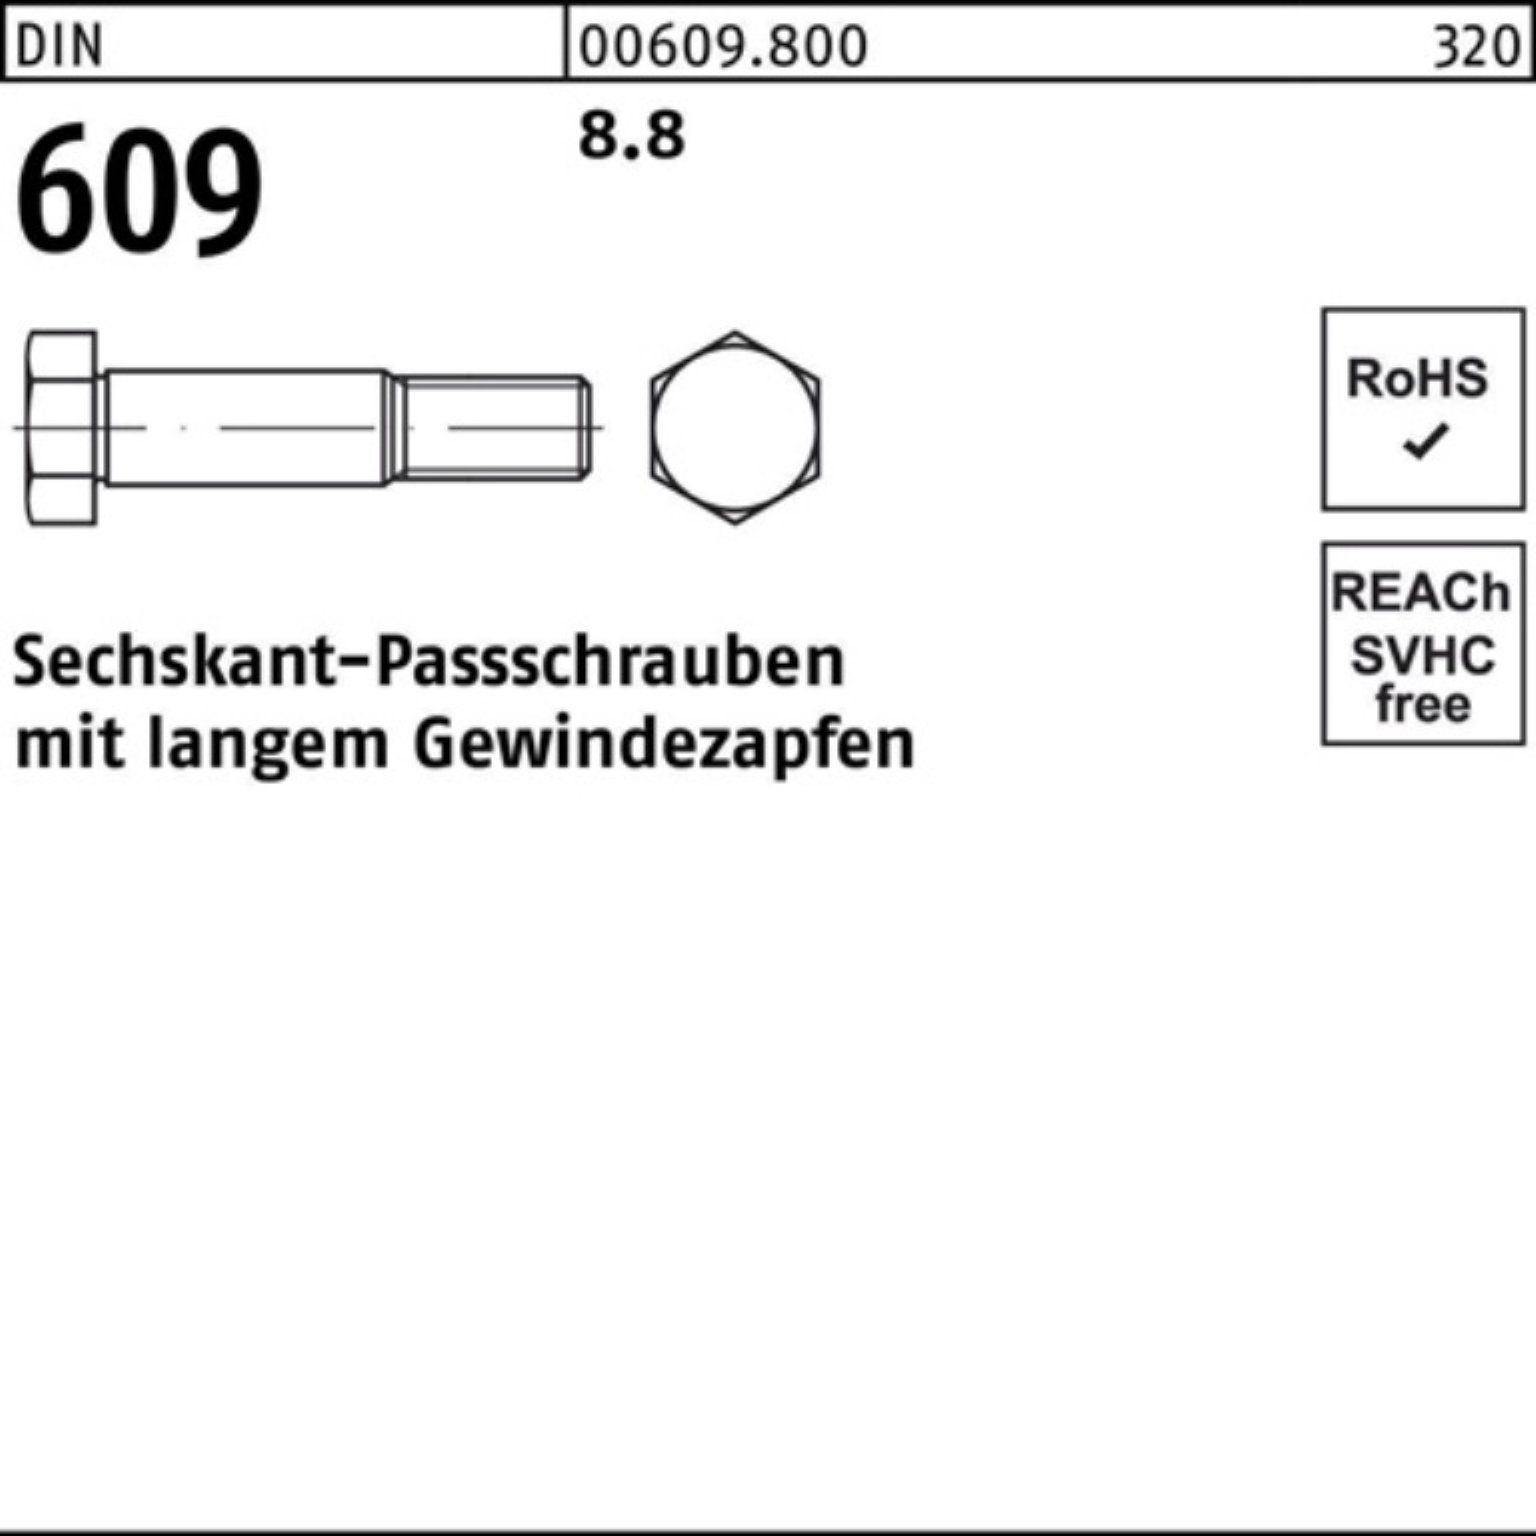 DIN Schraube 100er Gewindezapfen 120 Sechskantpassschraube M24x Reyher 609 langem Pack